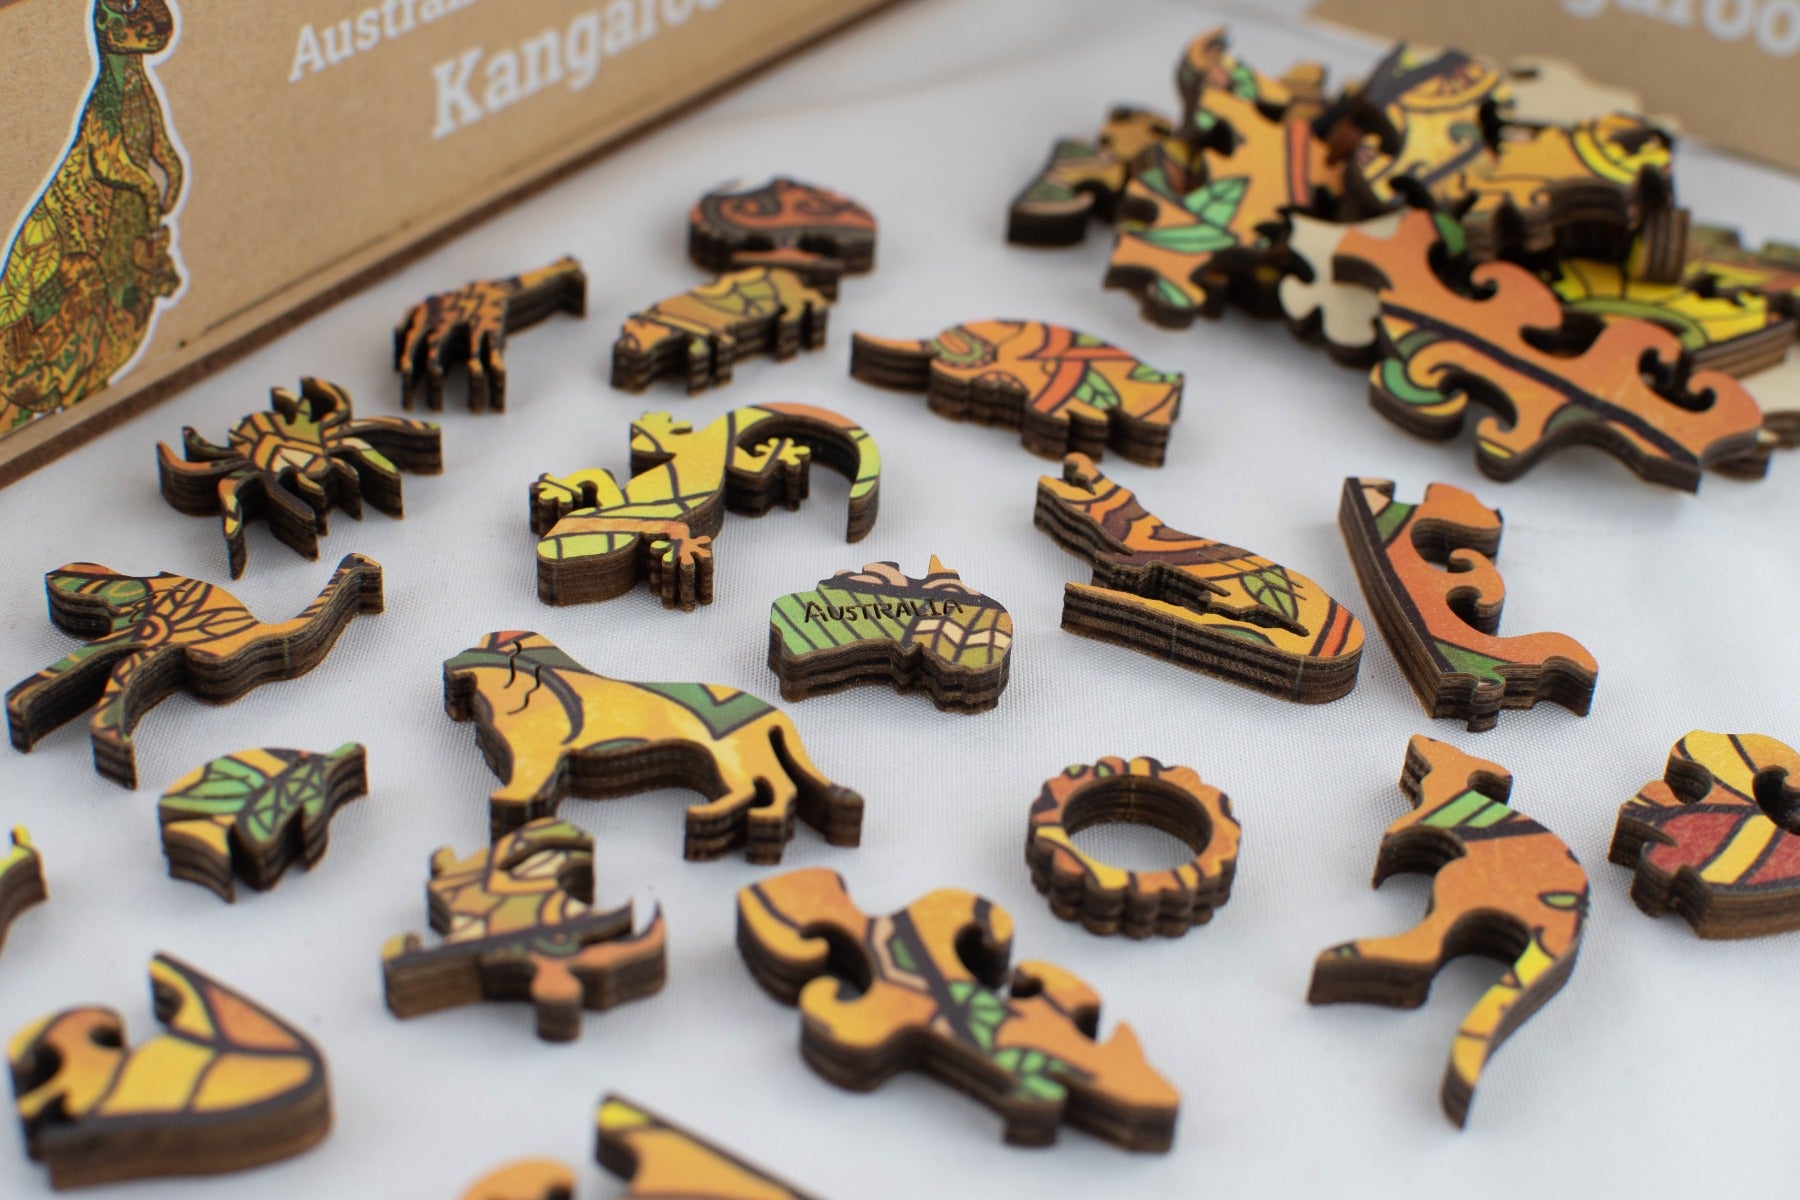 Kangaroo - LPG Wooden Puzzle Australiana Series 01